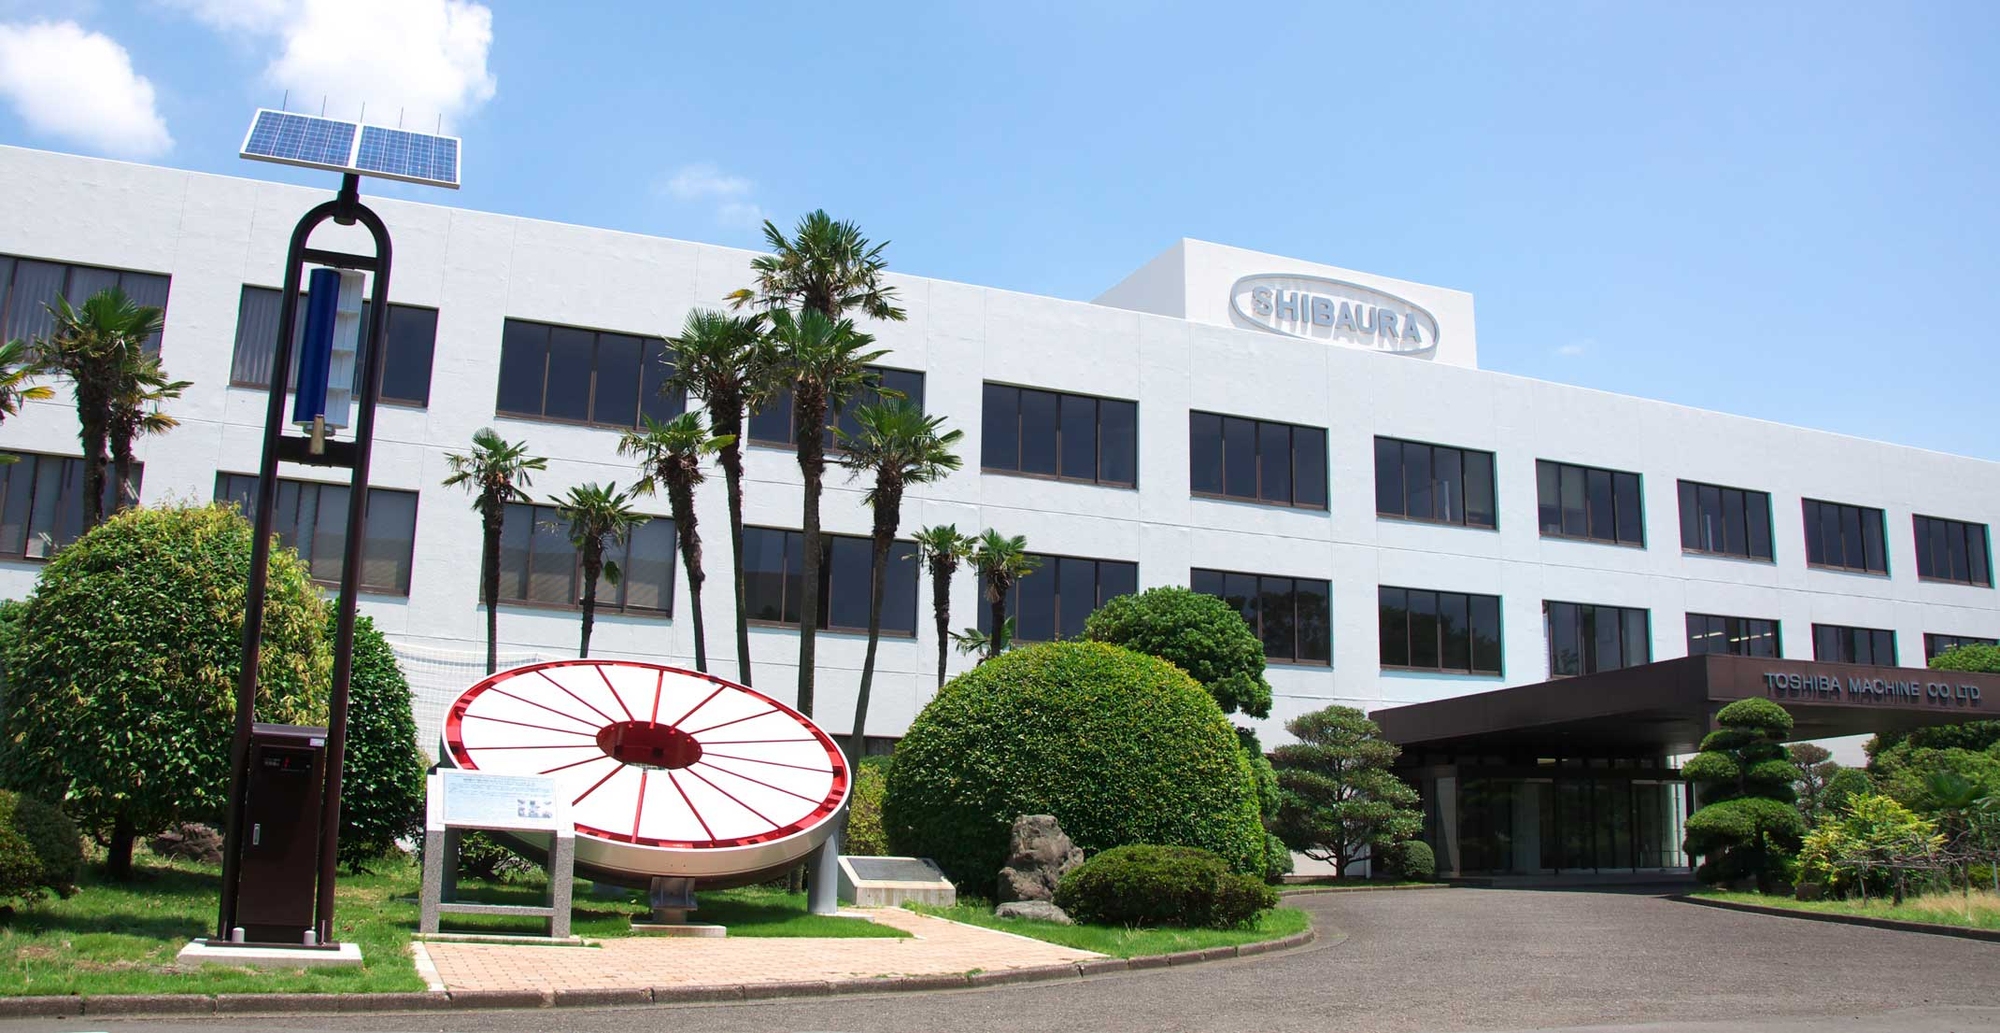 Shibaura Machine Company